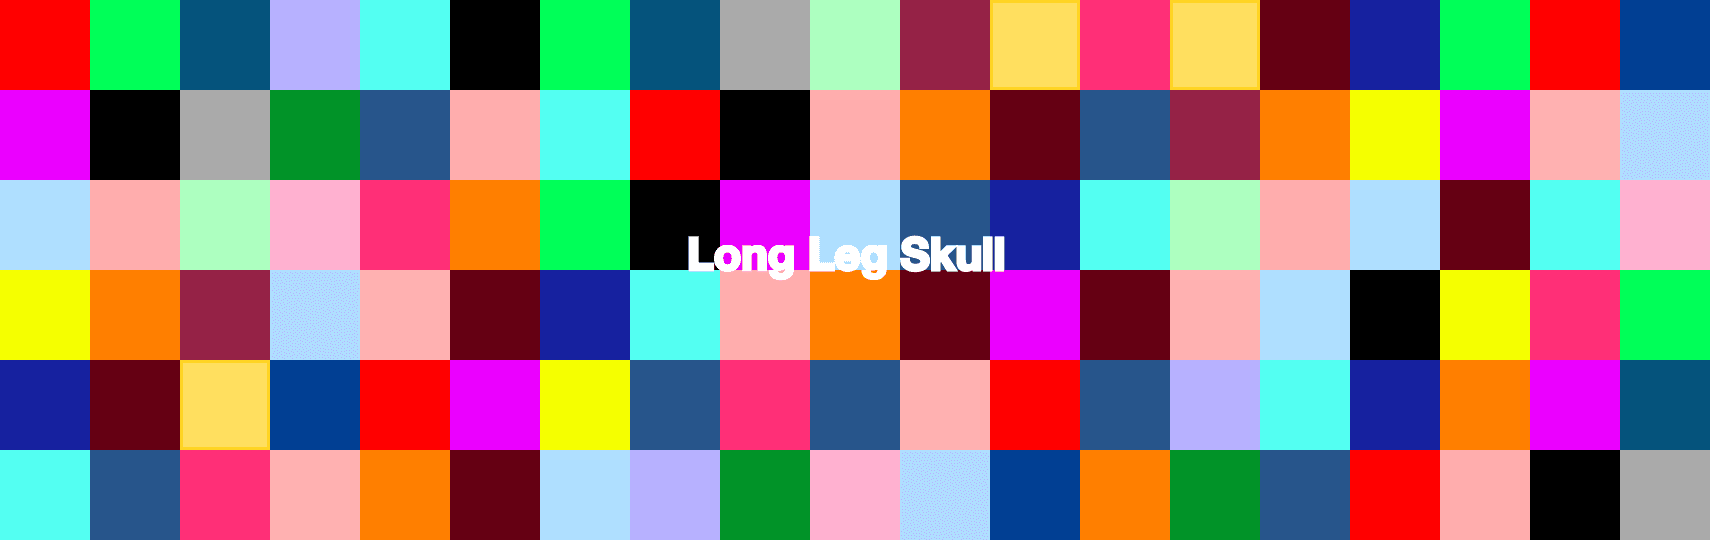 LongLegSkull banner